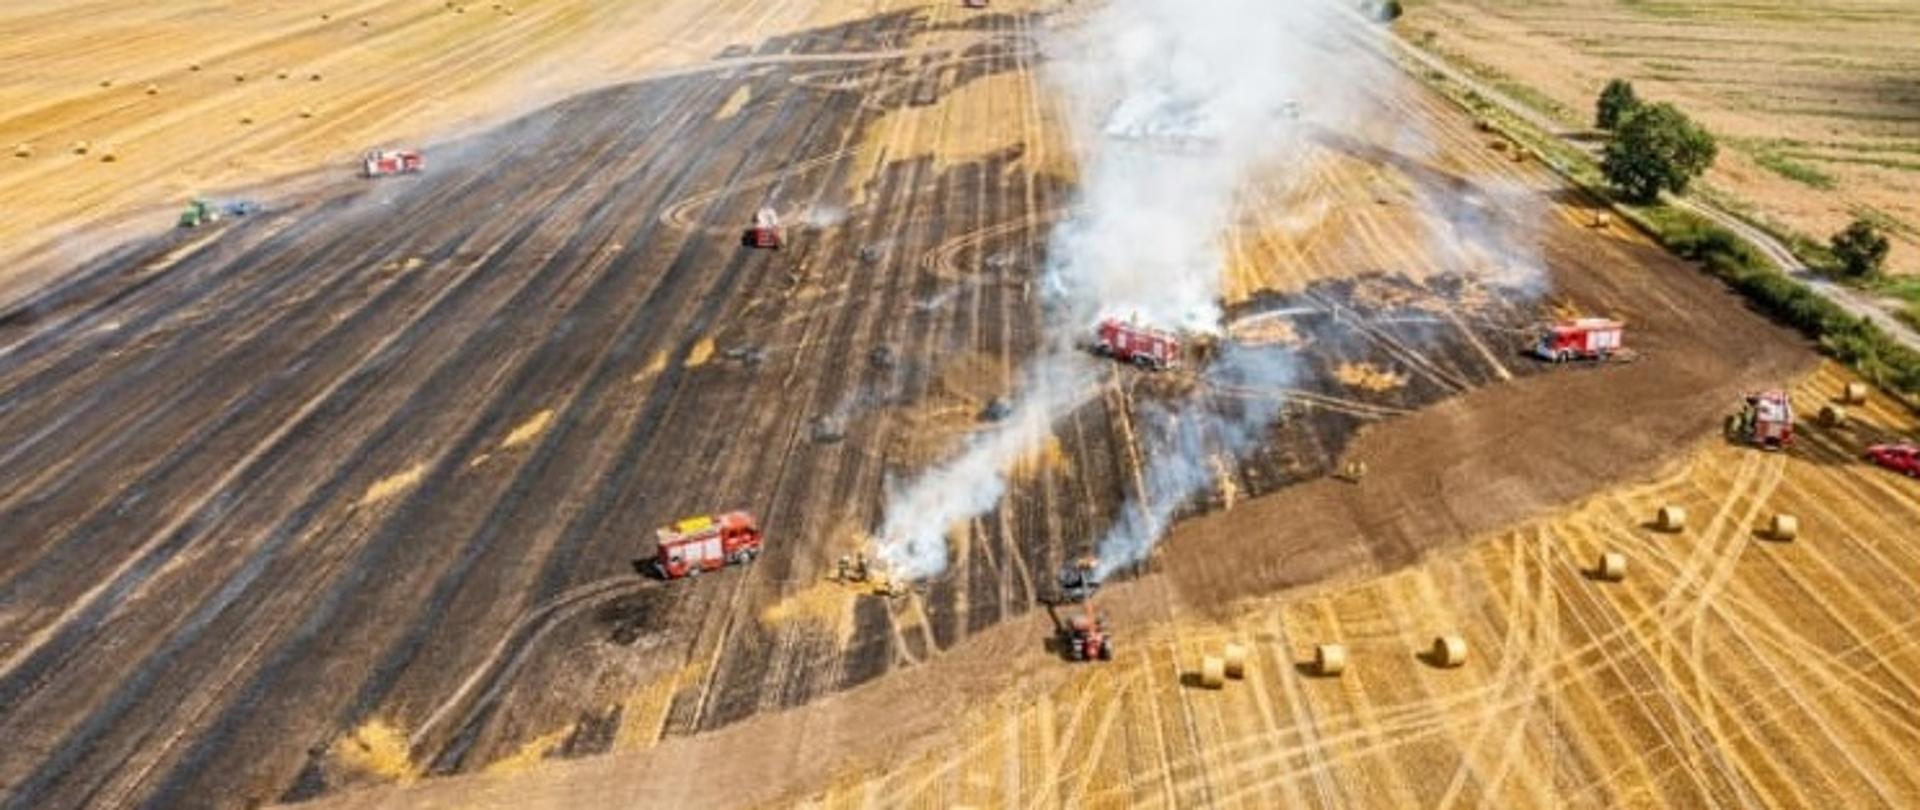 Widoczny z lotu ptaka pożaru ścierniska na polu. Widoczne samochody strażackie gaszące pożar.